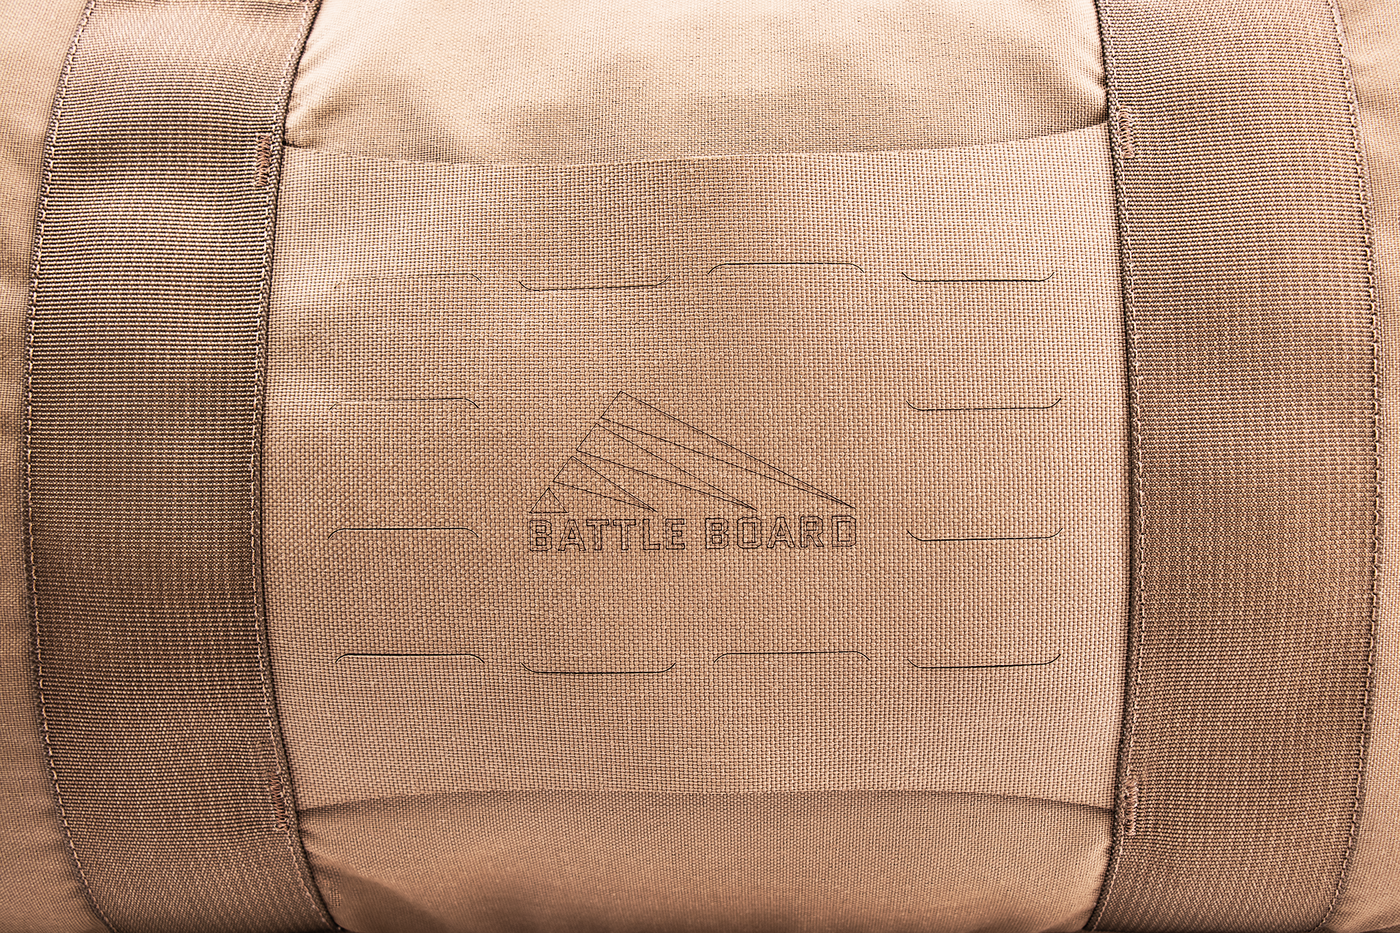 Bartlett Duffel Bag